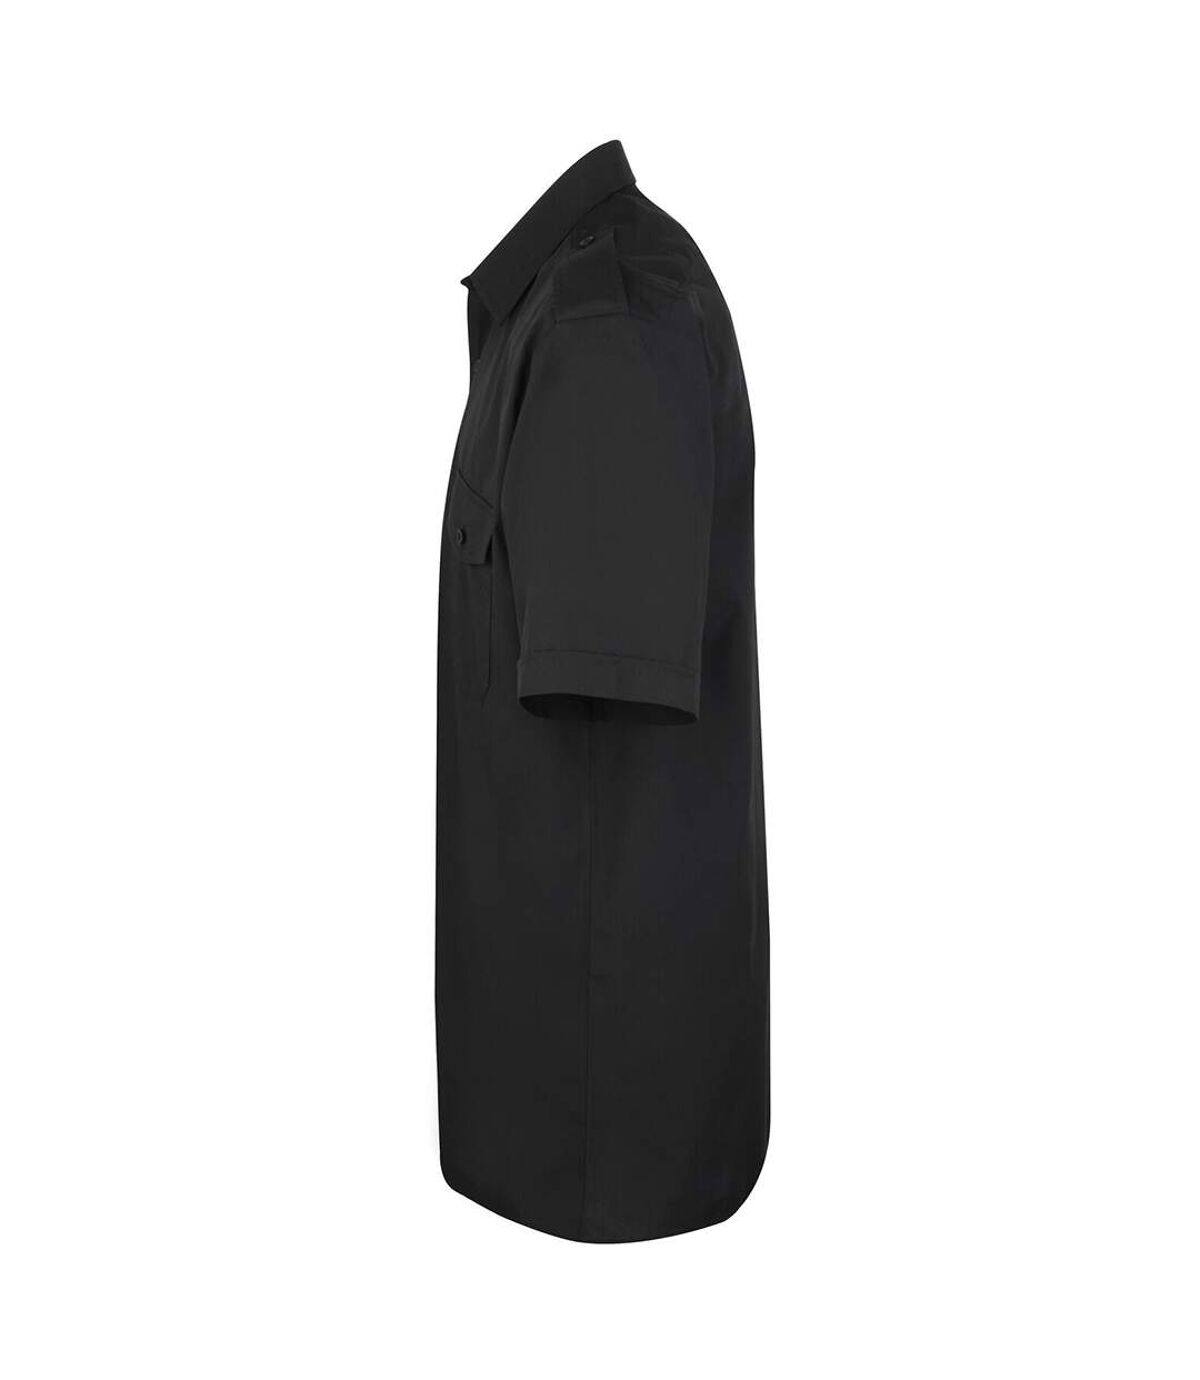 Premier Mens Short Sleeve Pilot Plain Work Shirt (Black) - UTRW1086